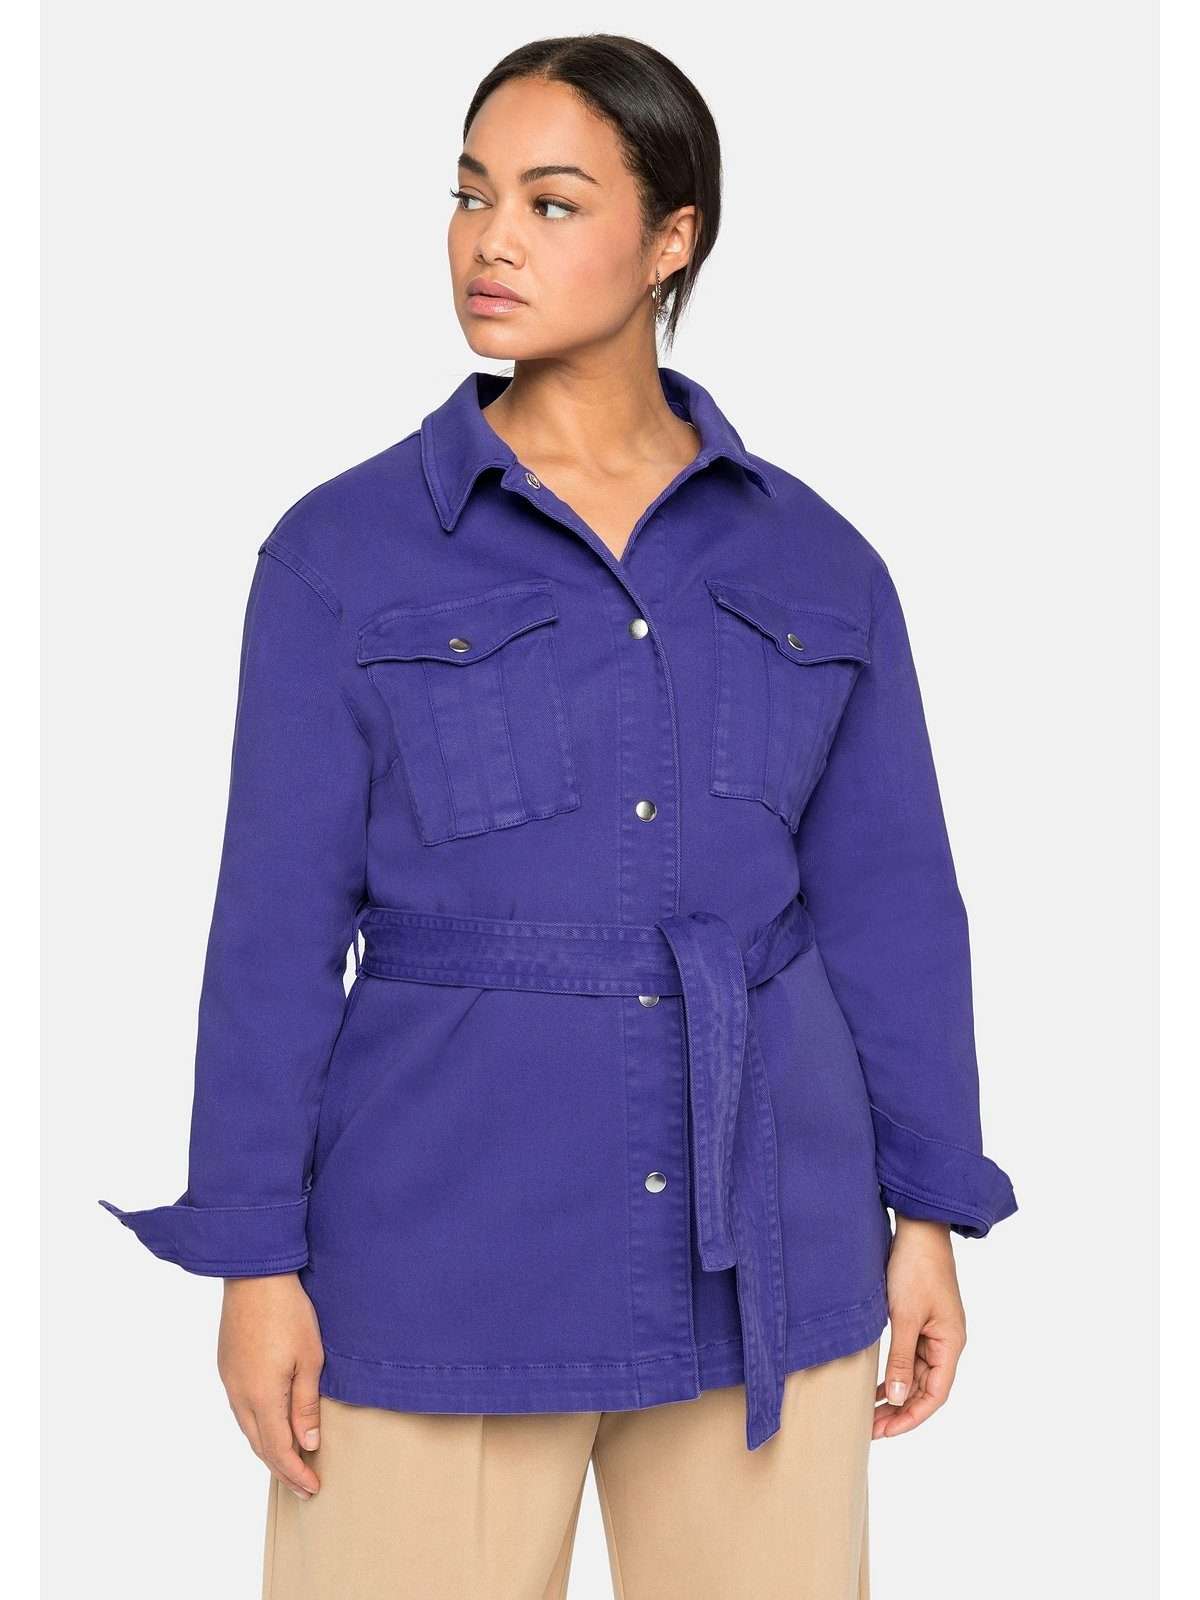 Джинсовая куртка большого размера в стиле рубашки